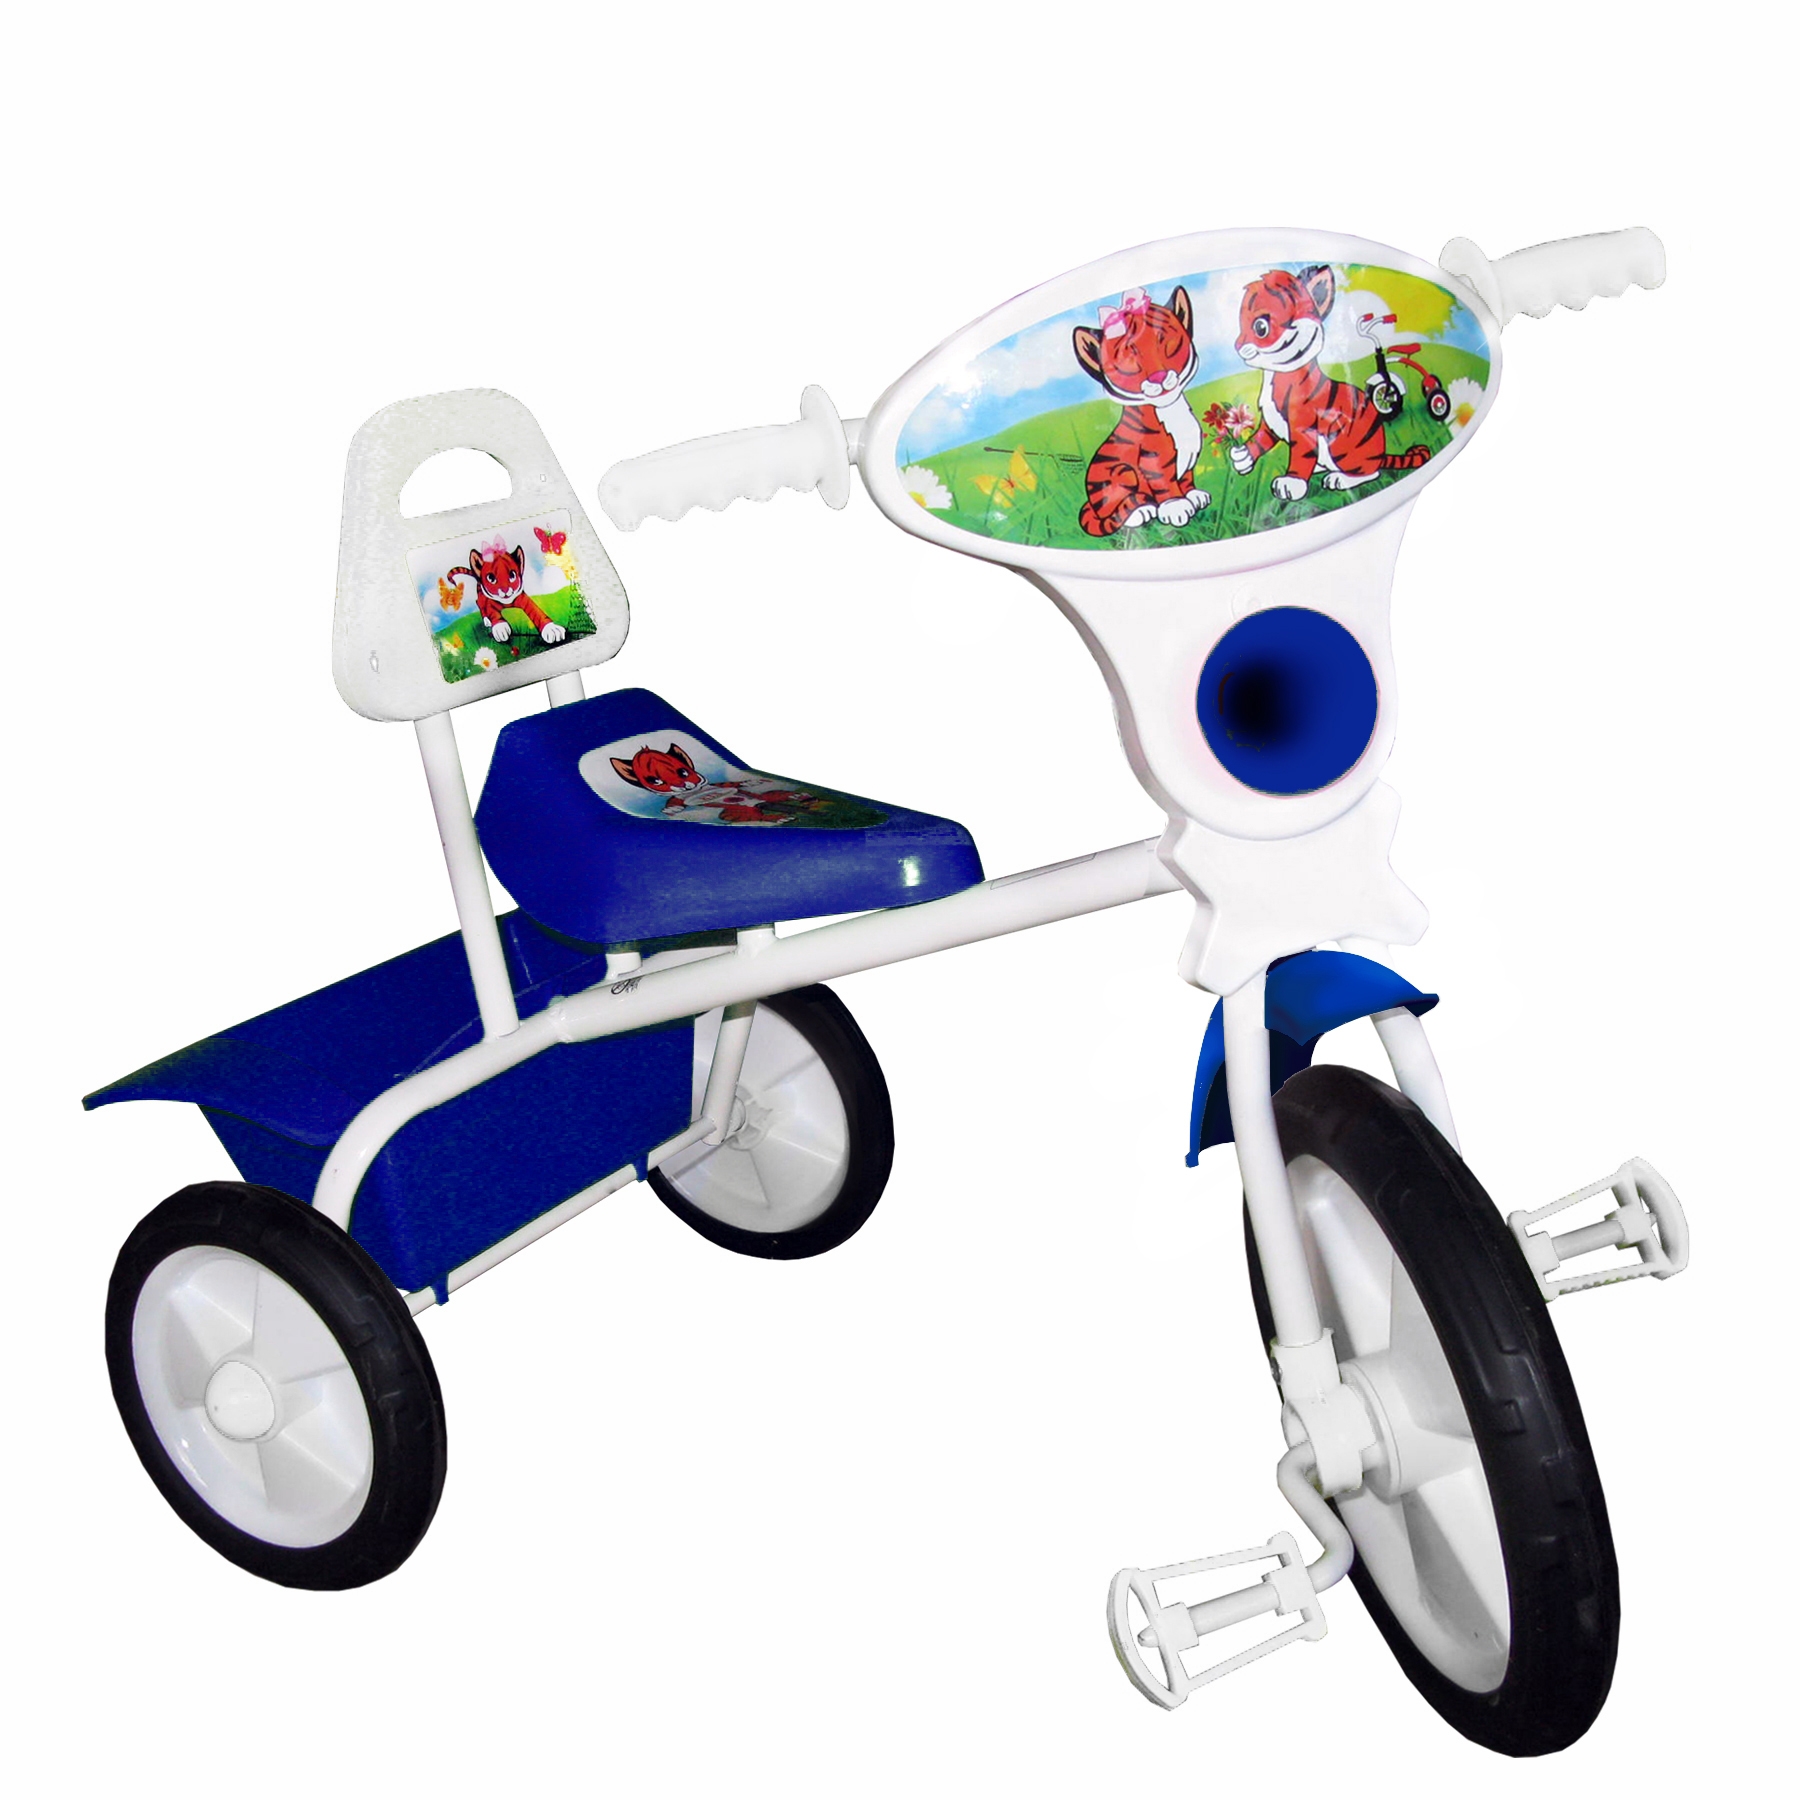 Велосипед для детей от года лучшие. Велосипед малыш 02п голубой. Велосипед малыш 06п голубой. Детский трехколесный велосипед малыш 06п. Велосипед трёхколёсный детский бейби хит.